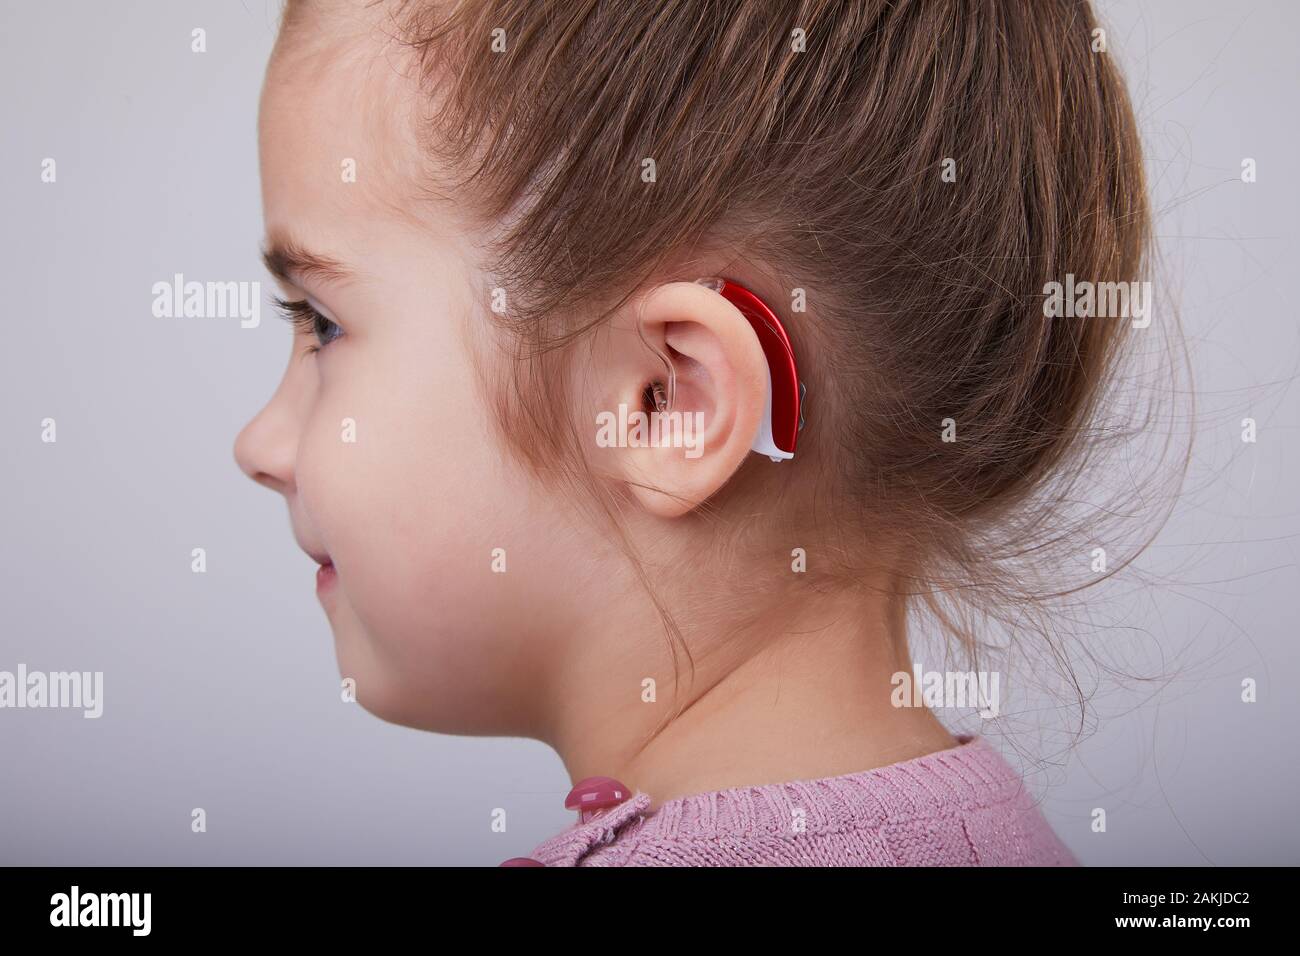 Prothèse auditive dans l'oreille de la jeune fille. Petite fille portant un appareil  auditif. Prise de vue en studio Photo Stock - Alamy